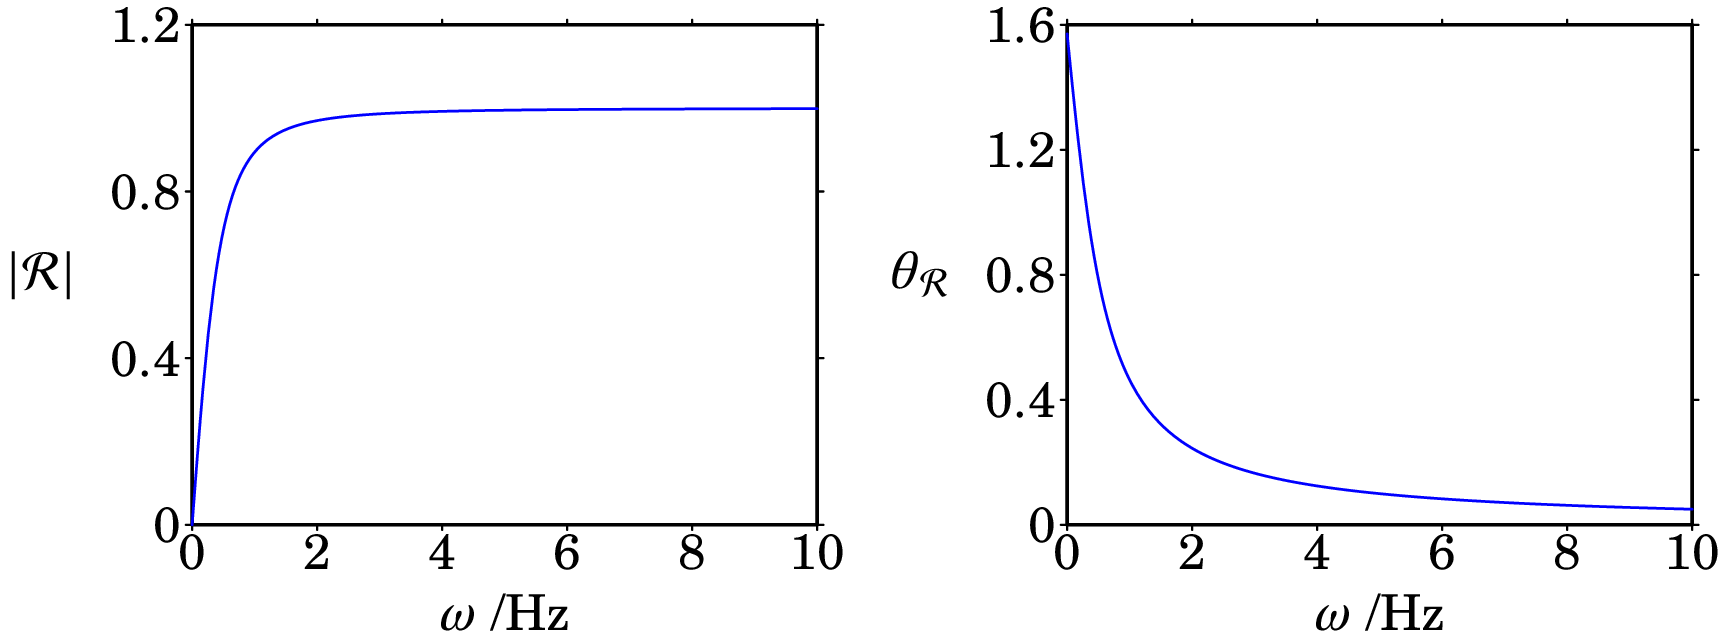 Módulo e ângulo de fase da função de resposta em frequência
de um filtro passa-alto com frequência angular de corte 